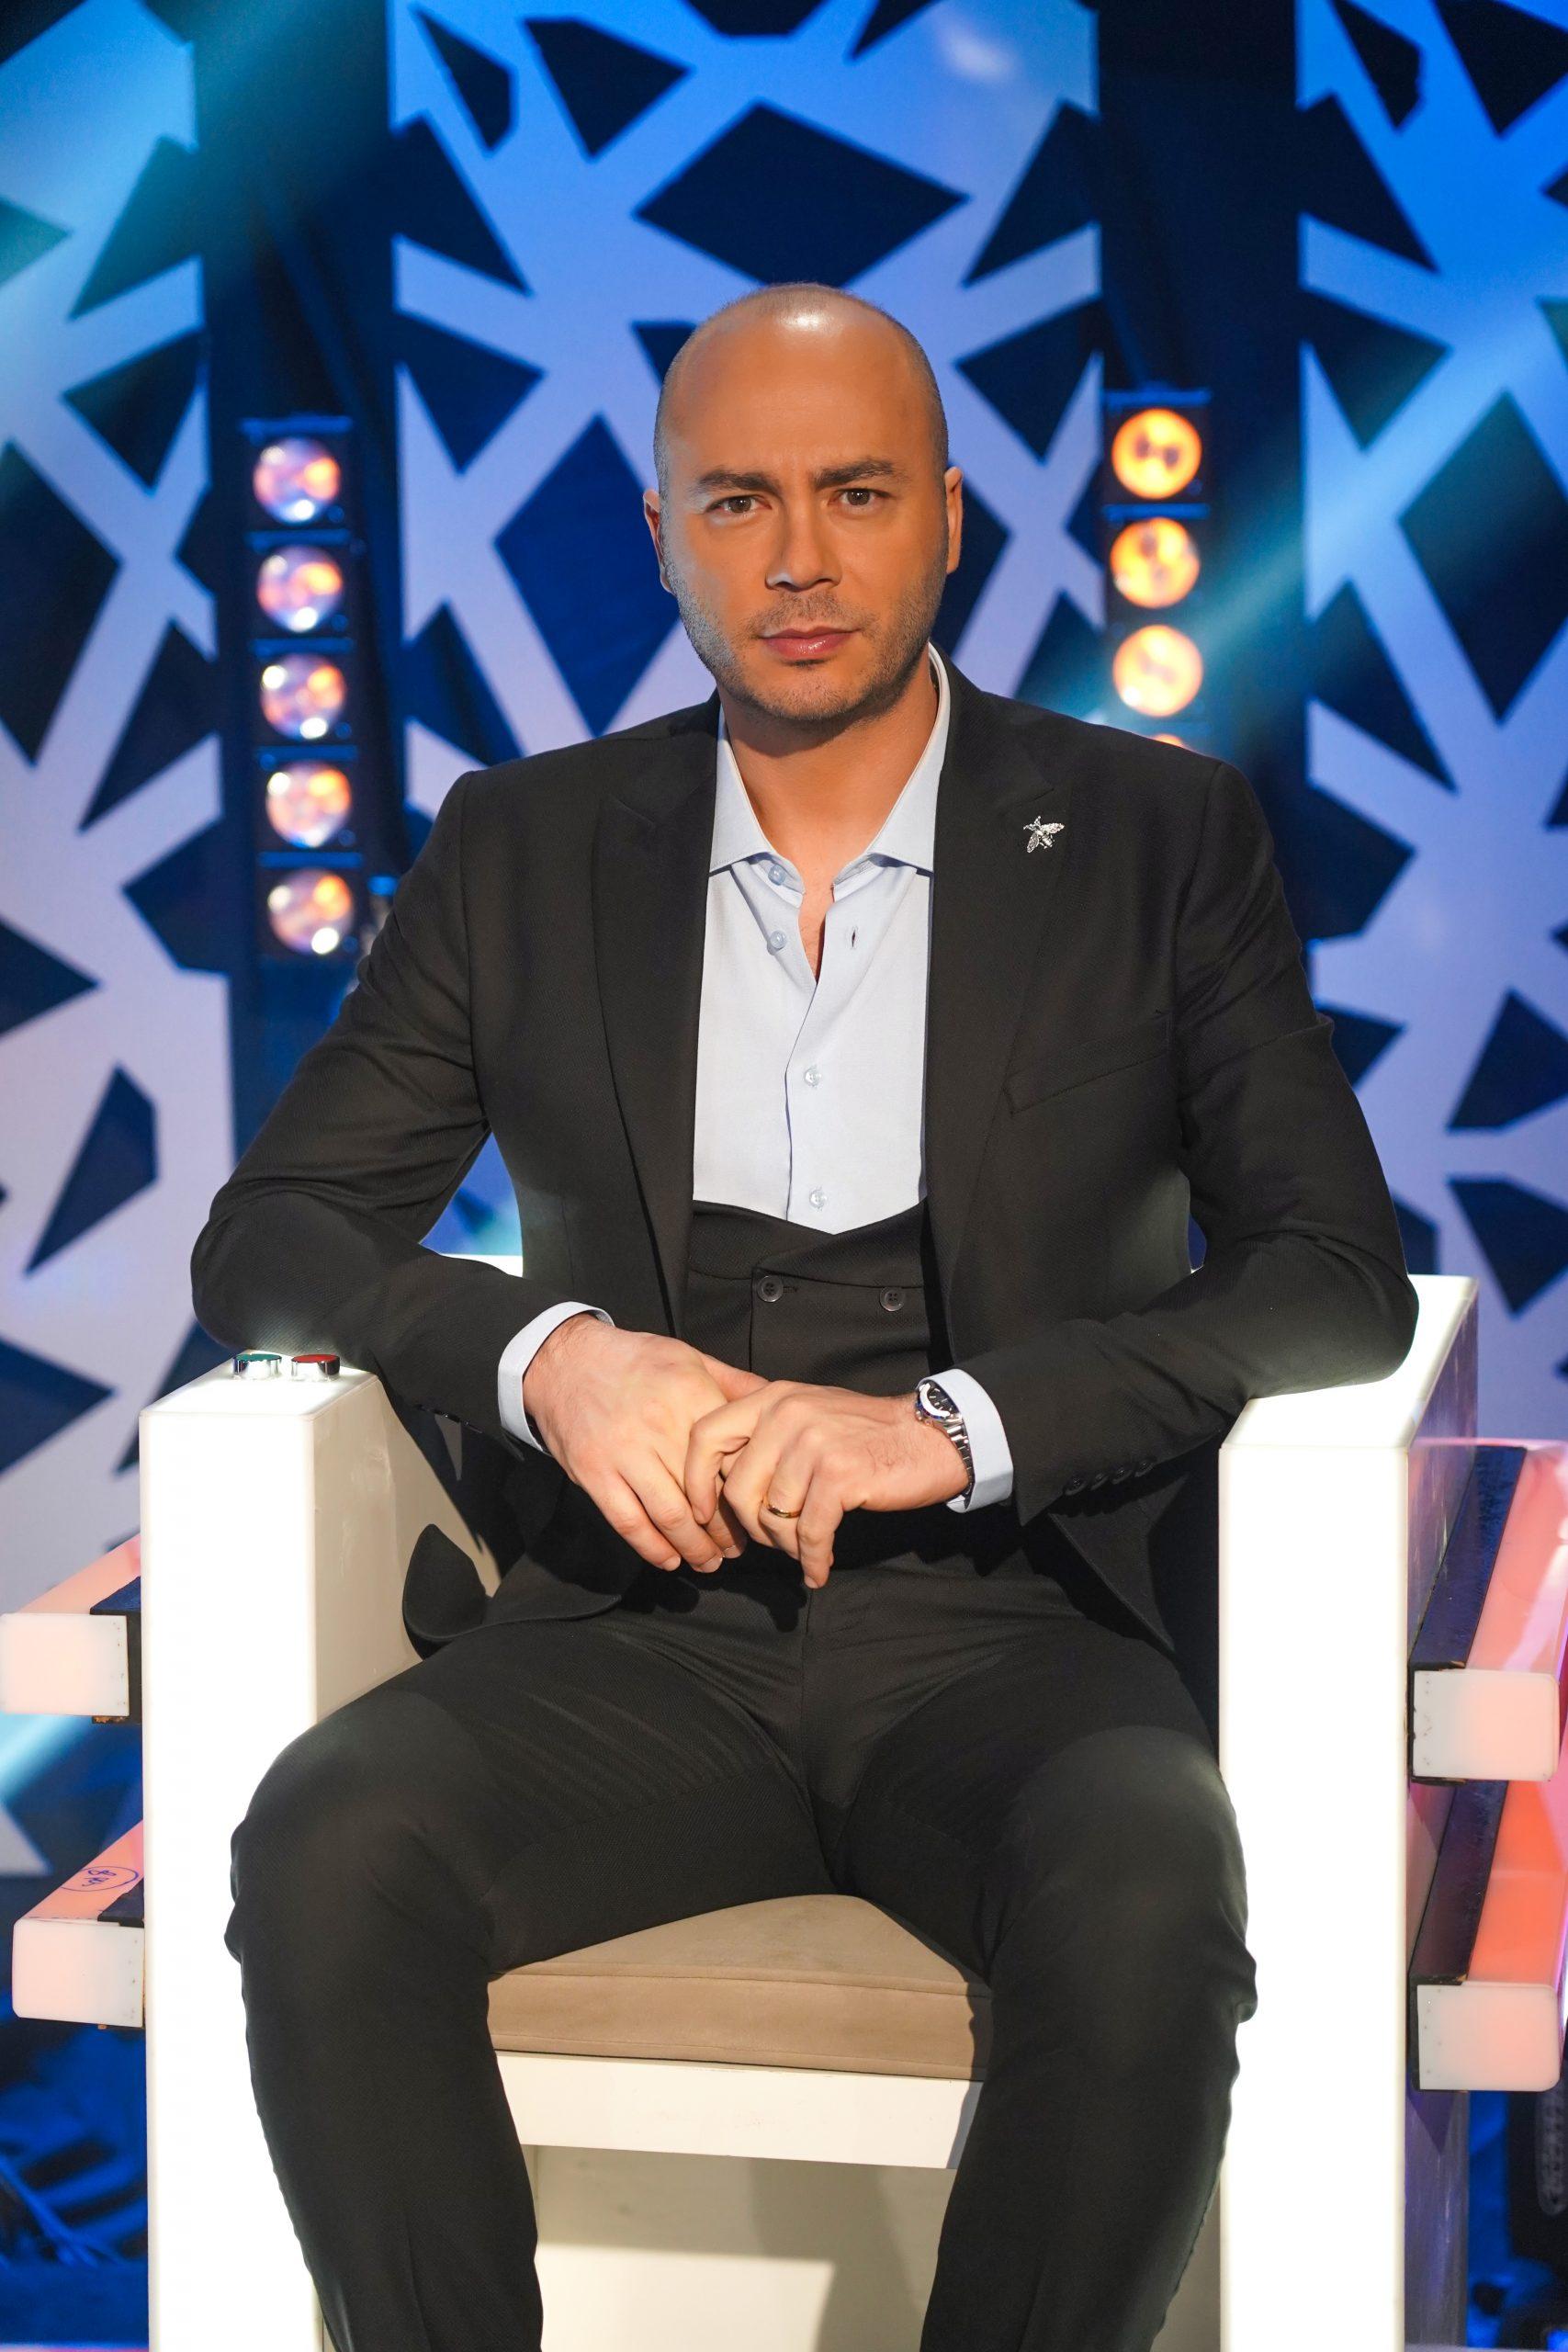 Lebanon’s LBCI TV anchor, Rodolph Hilal is Miss Elite’s 2022 male host!